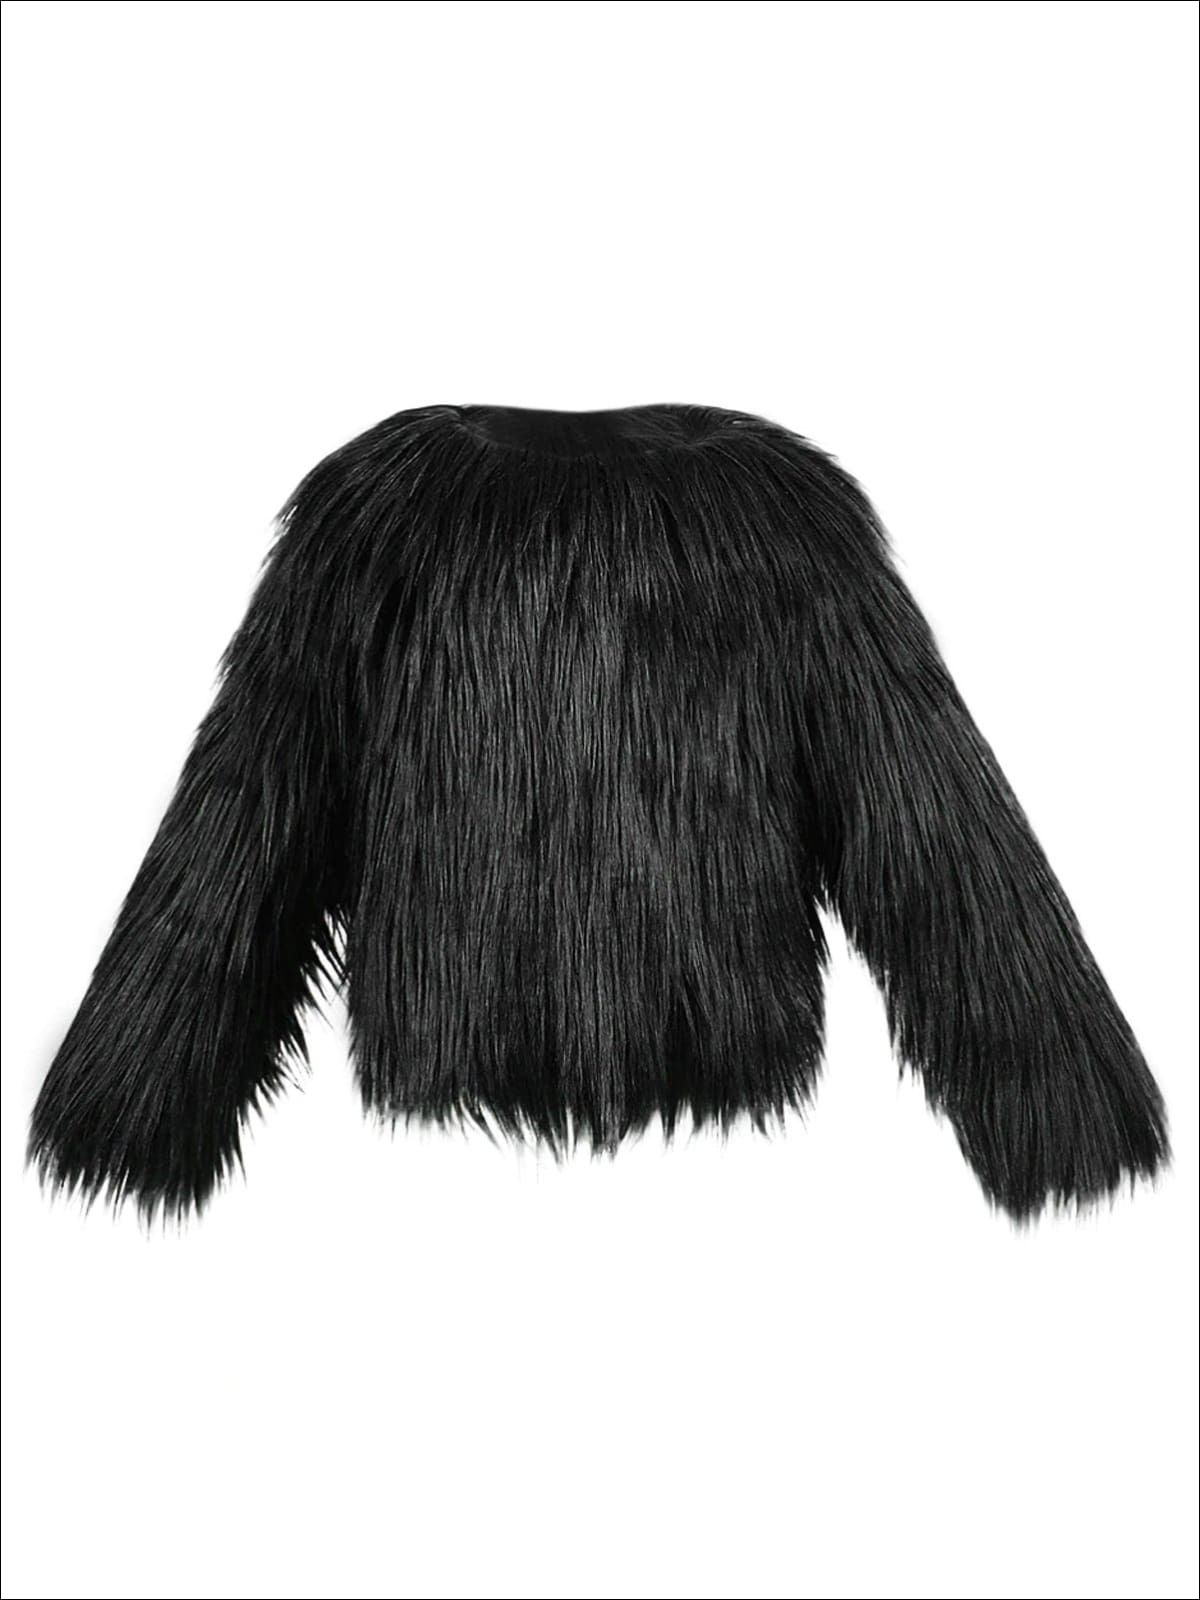 Girls Trendy Winter Faux Fur Jacket - Black / 3T - Girls Jacket